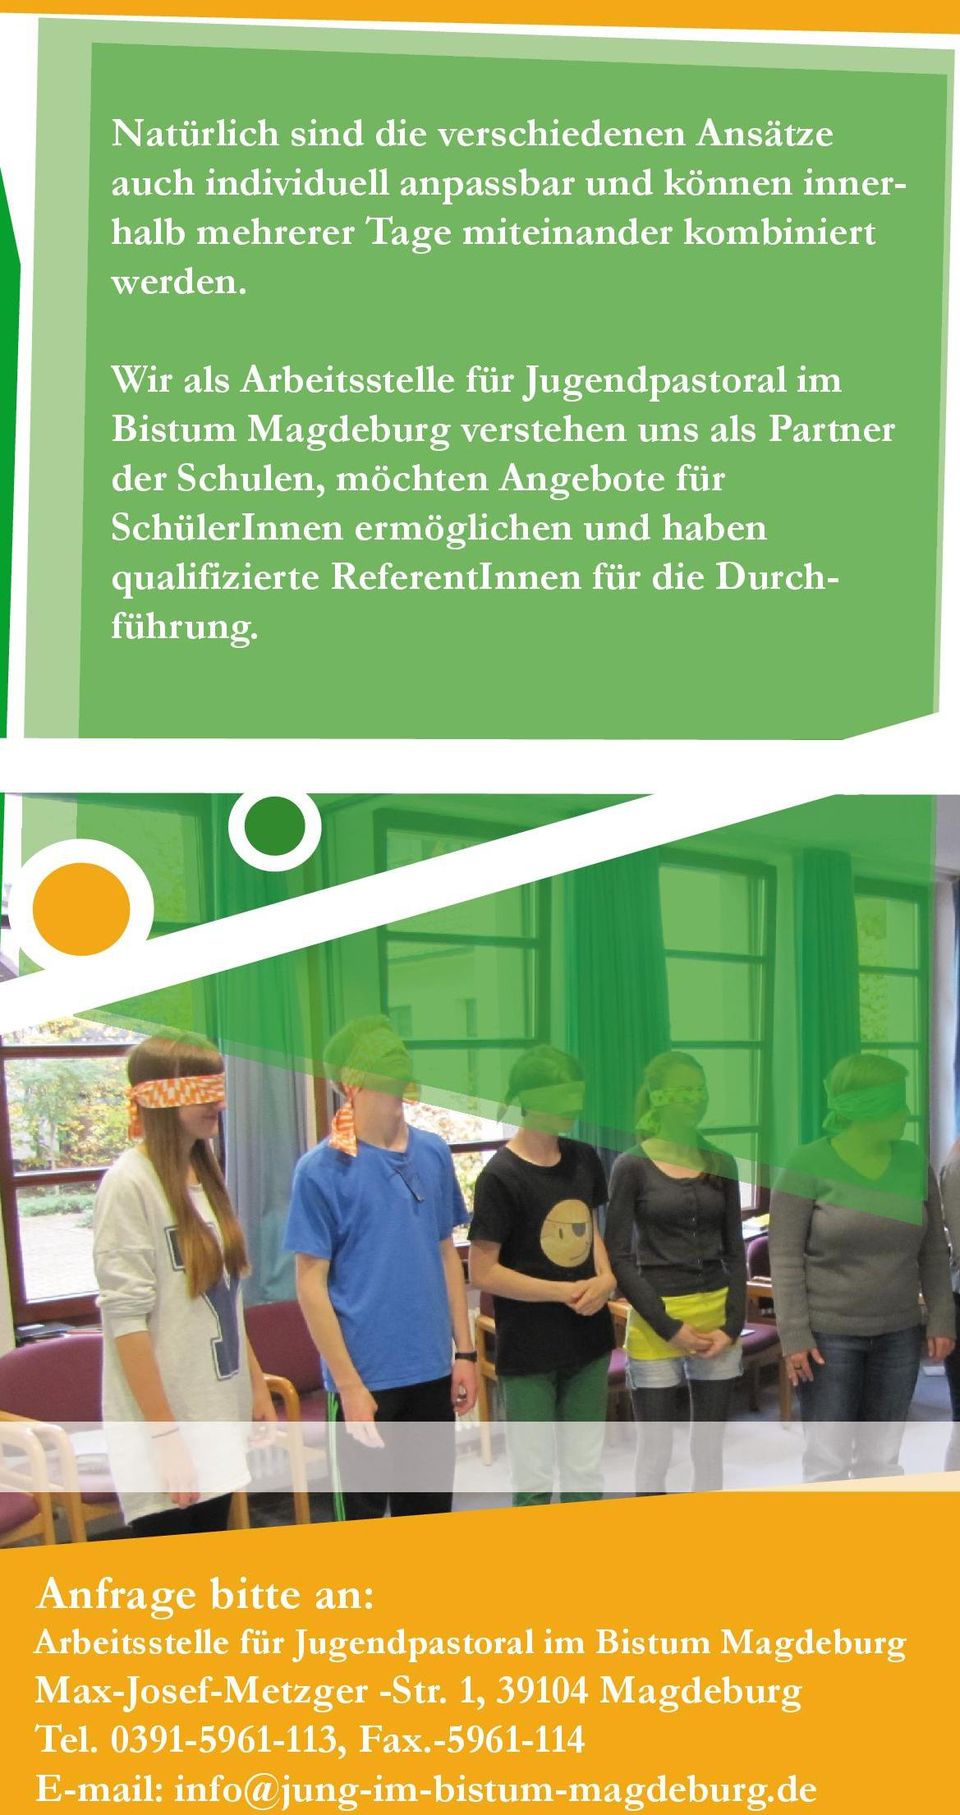 Wir als Arbeitsstelle für Jugendpastoral im Bistum Magdeburg verstehen uns als Partner der Schulen, möchten Angebote für